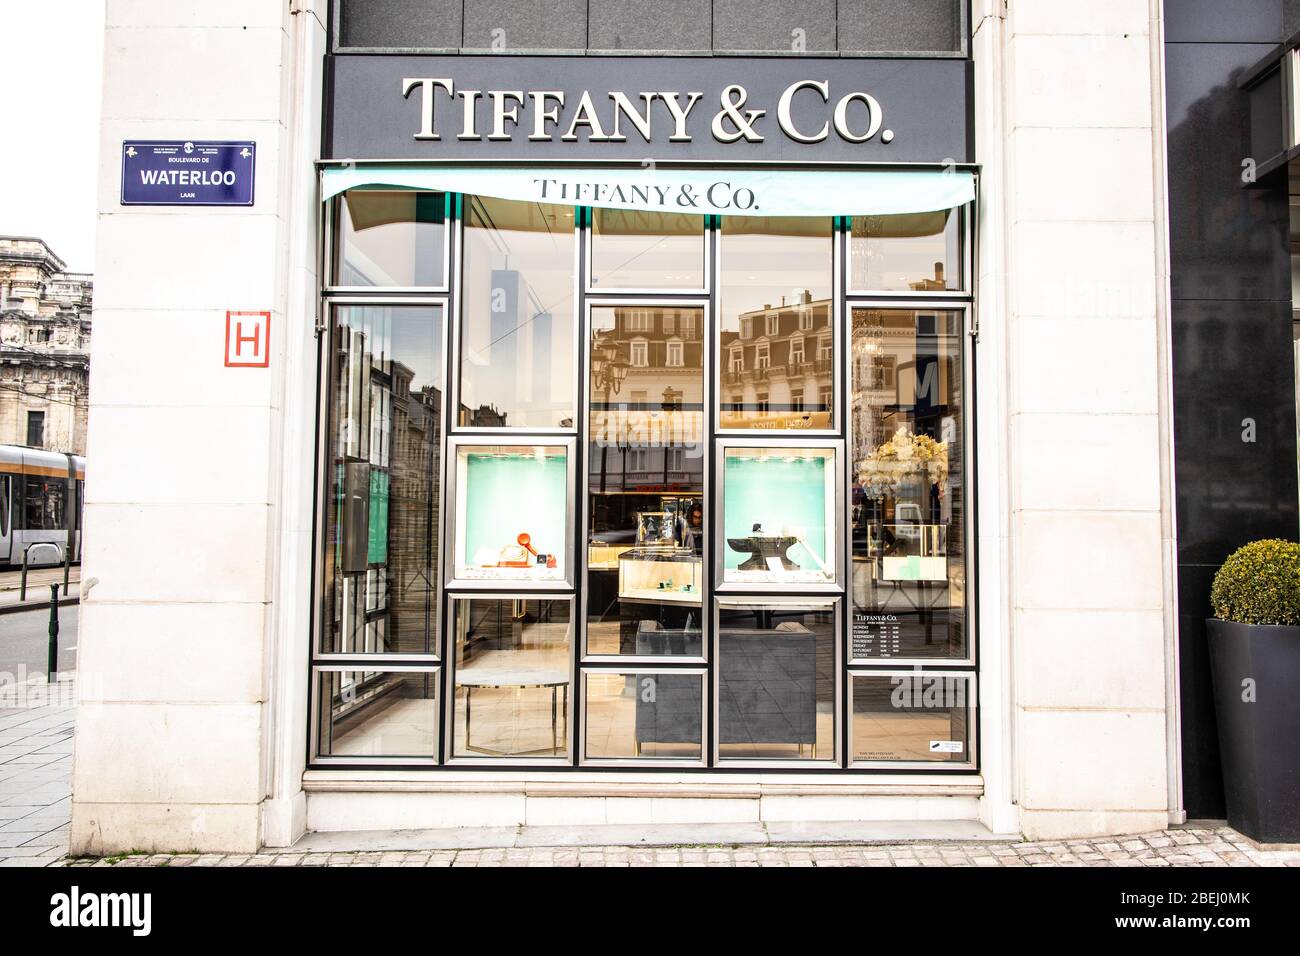 tiffany jewelry shop